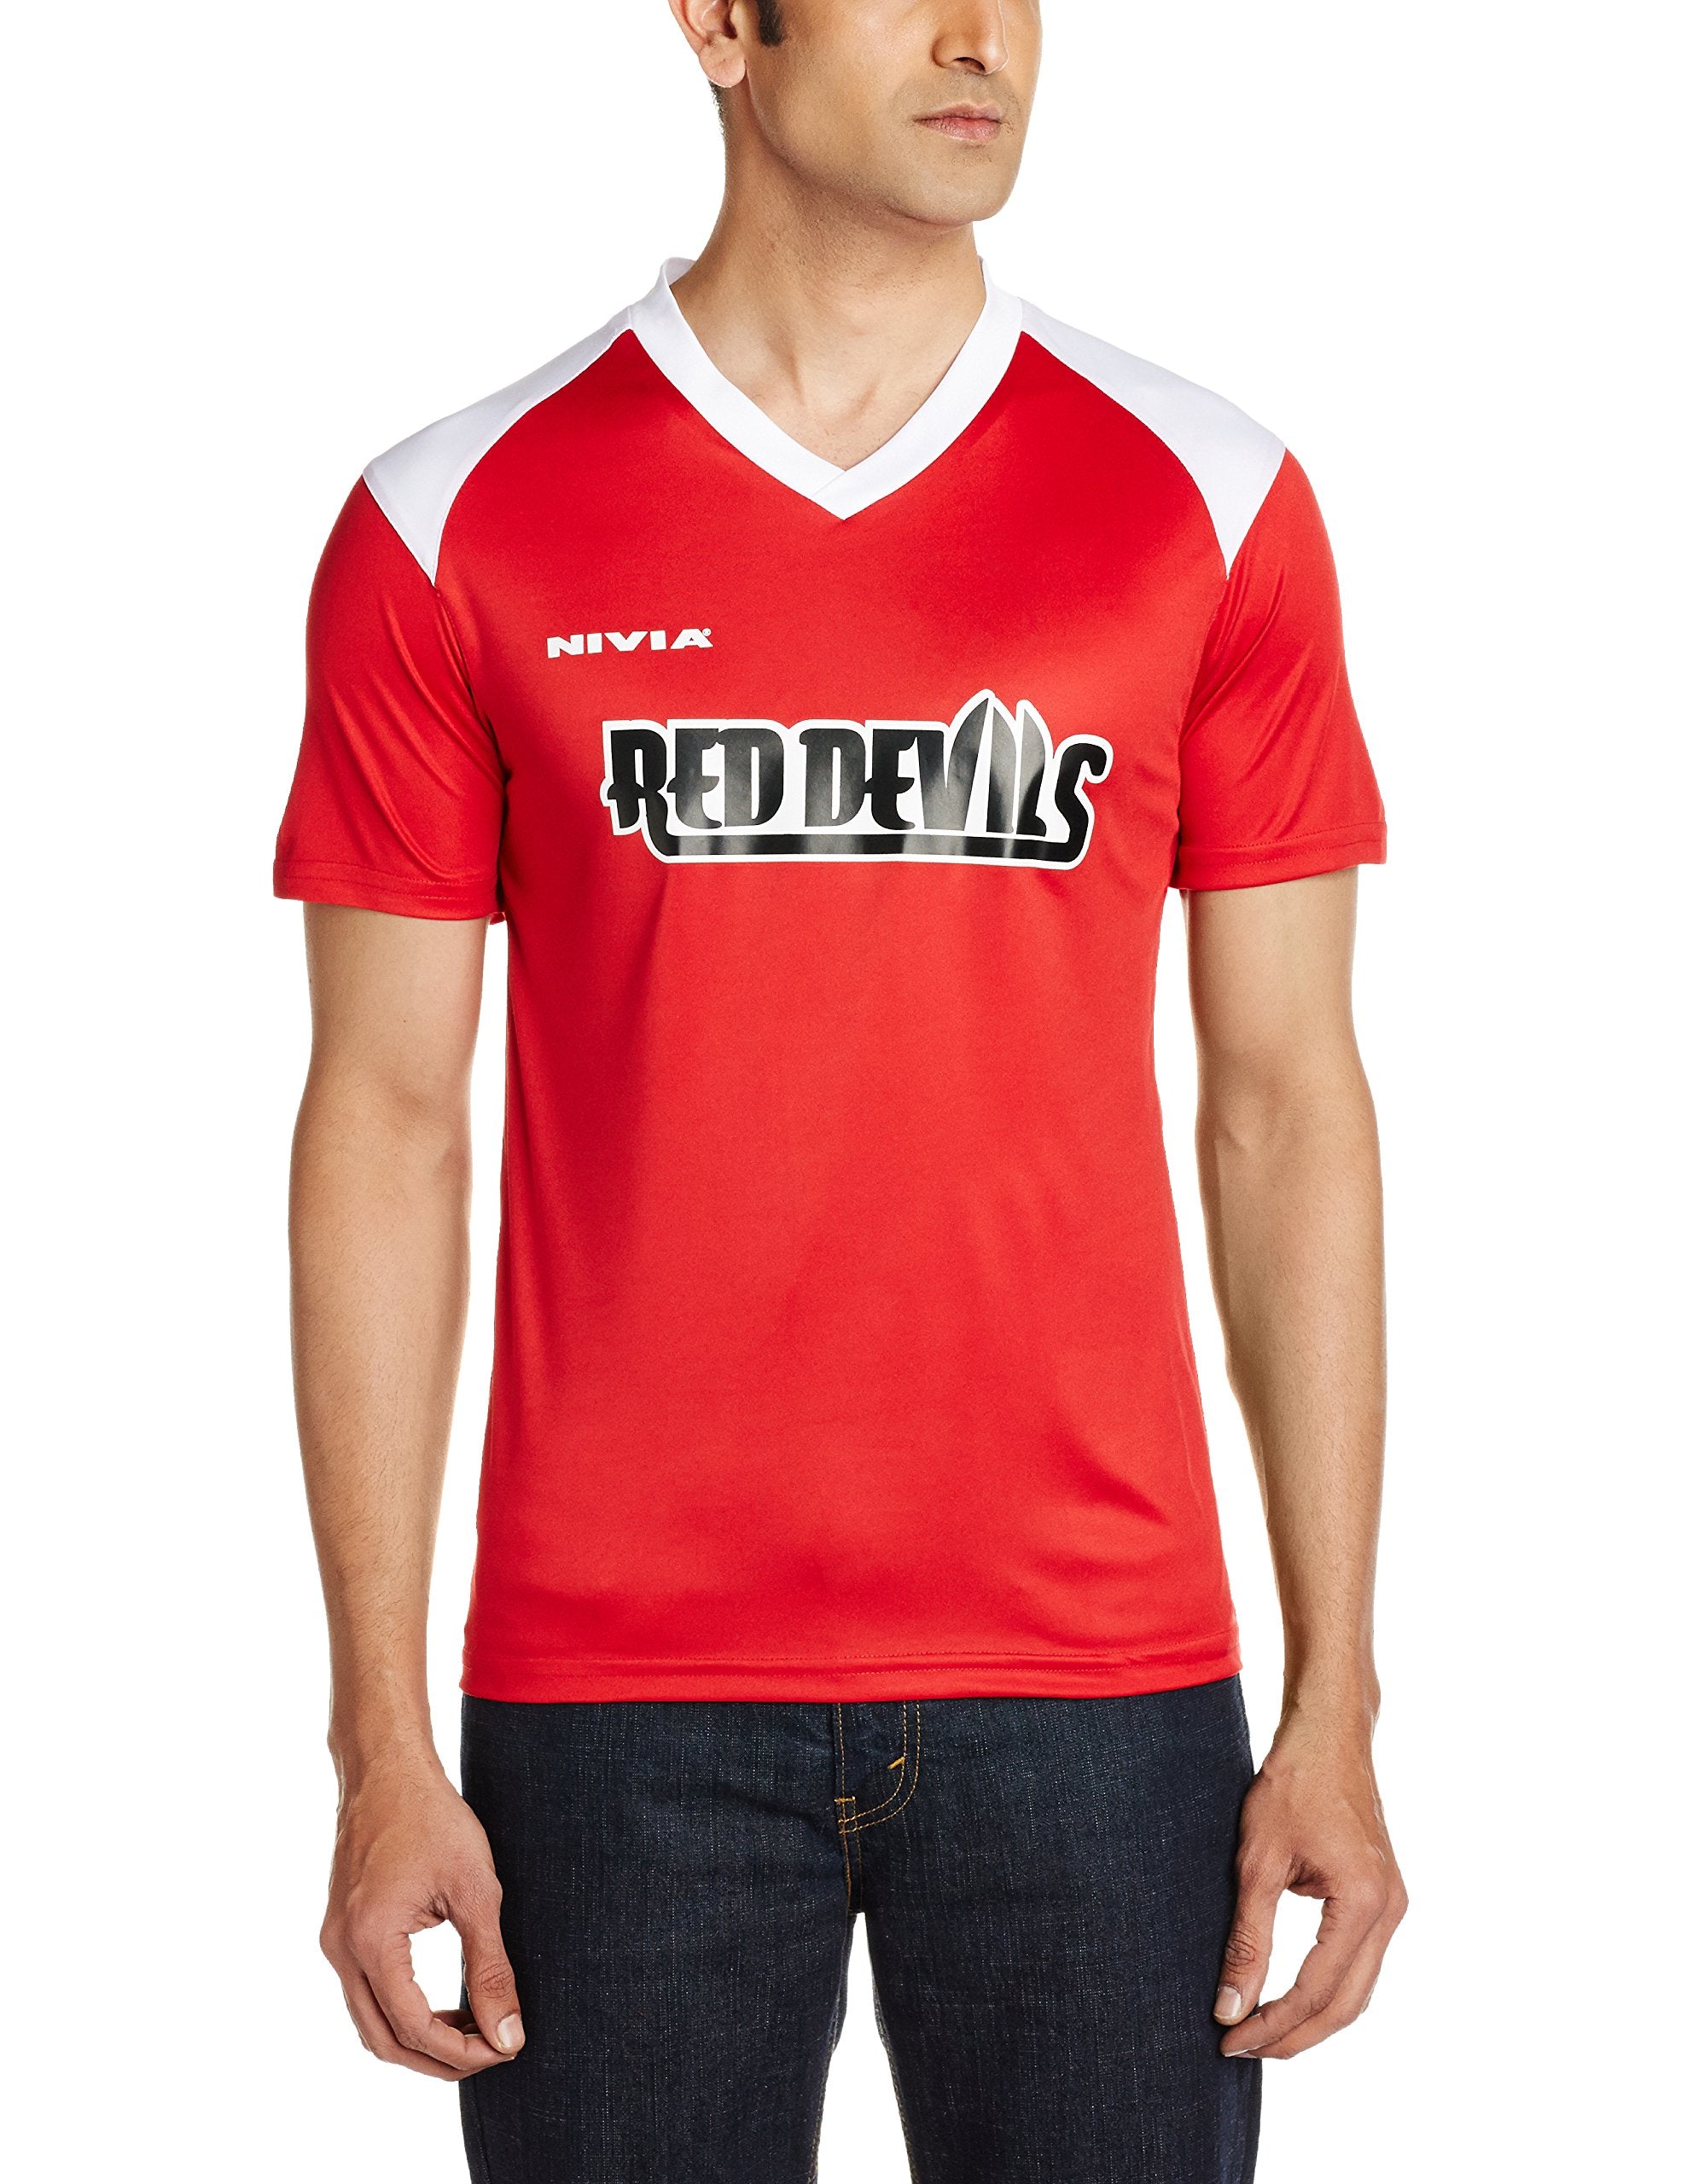 Nivia Red Devils Club T-Shirt, Medium (Red/White)